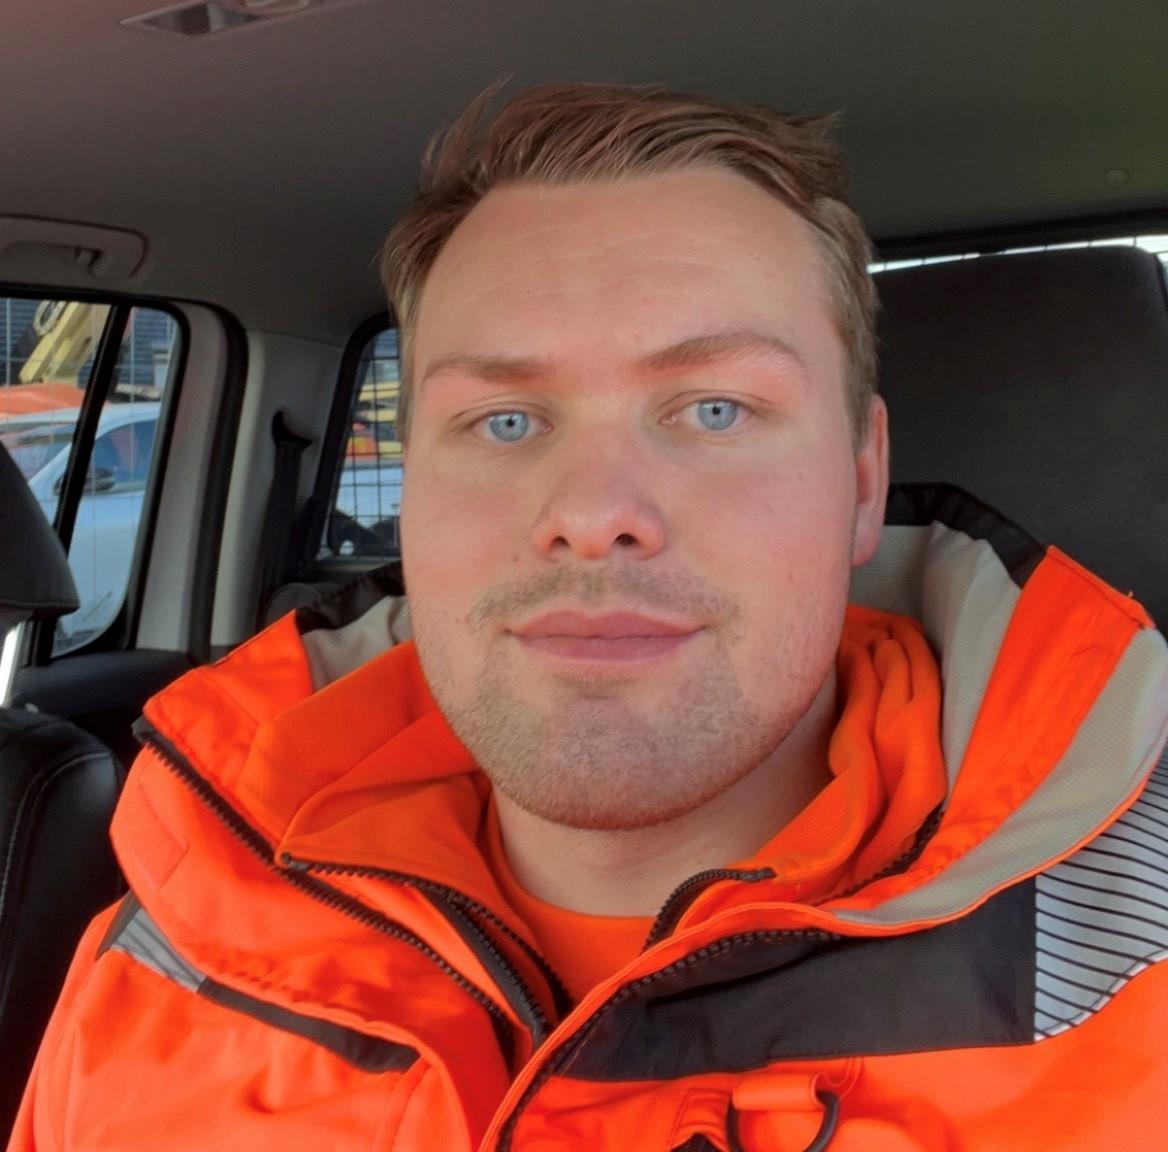 Bilde av Kasper Faugli Åvitsland. Mann som smiler mot kamera, har lyst hår og blå øyne. Han har på seg en oransje jakke og sitter inne i en bil. 